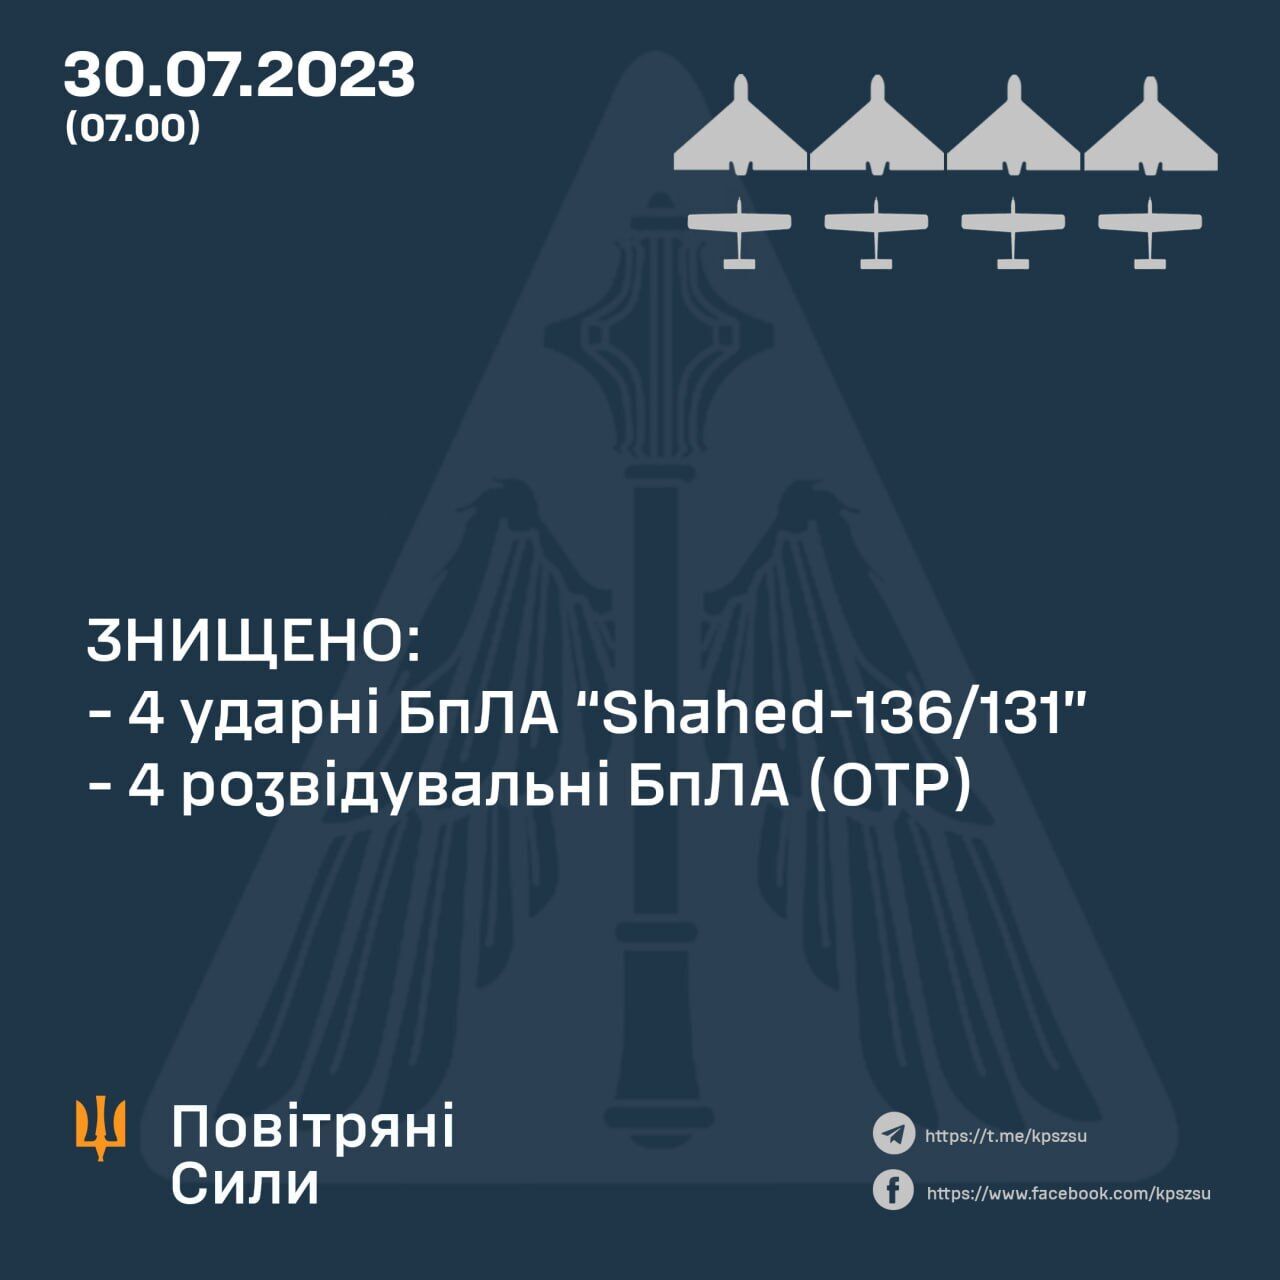 Повітряні сили знищили 4 ударні і 4 розвідувальні БПЛА армії Росії: всі деталі